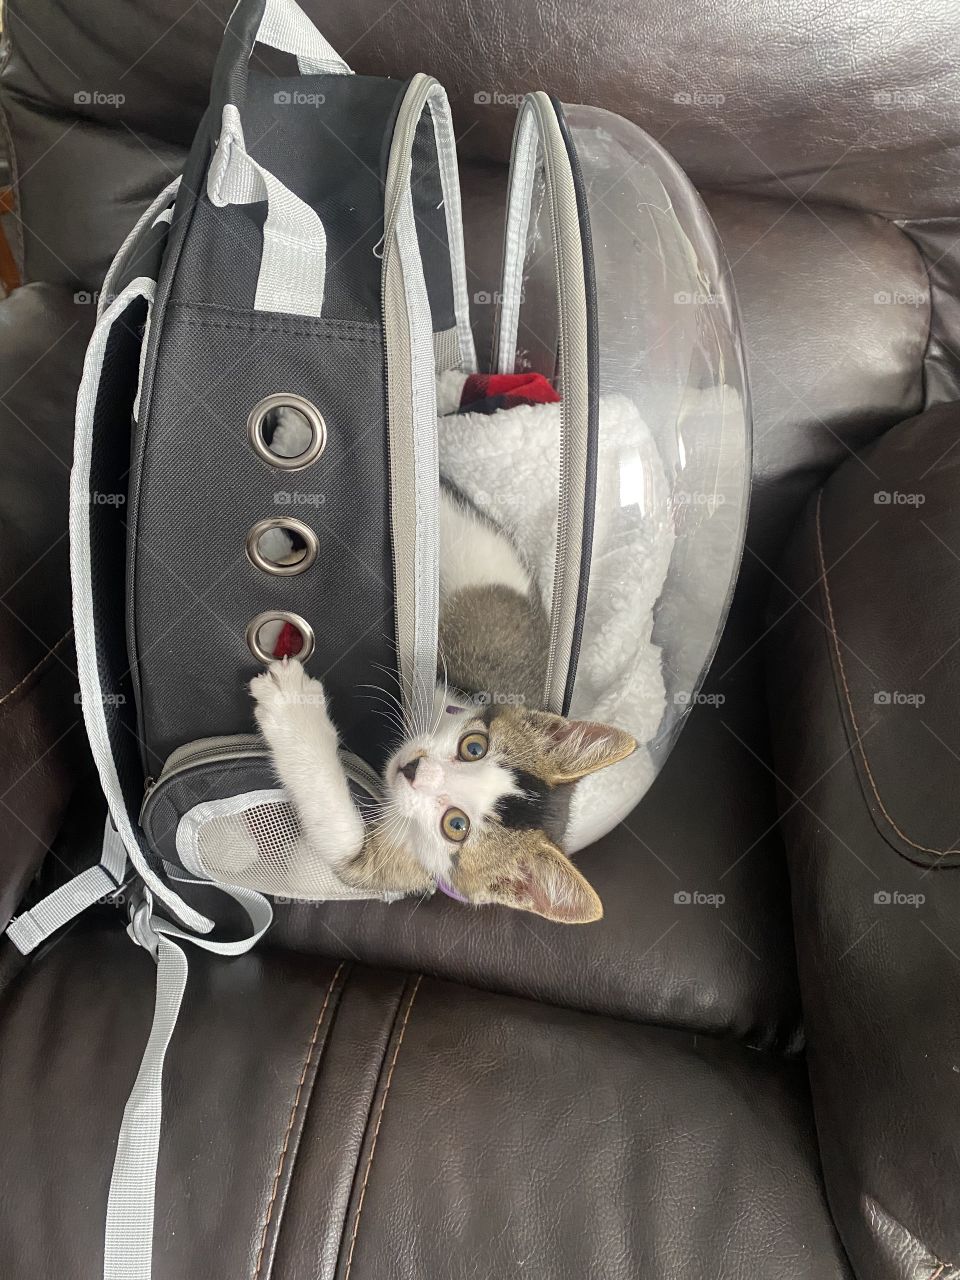 Traveling kitten